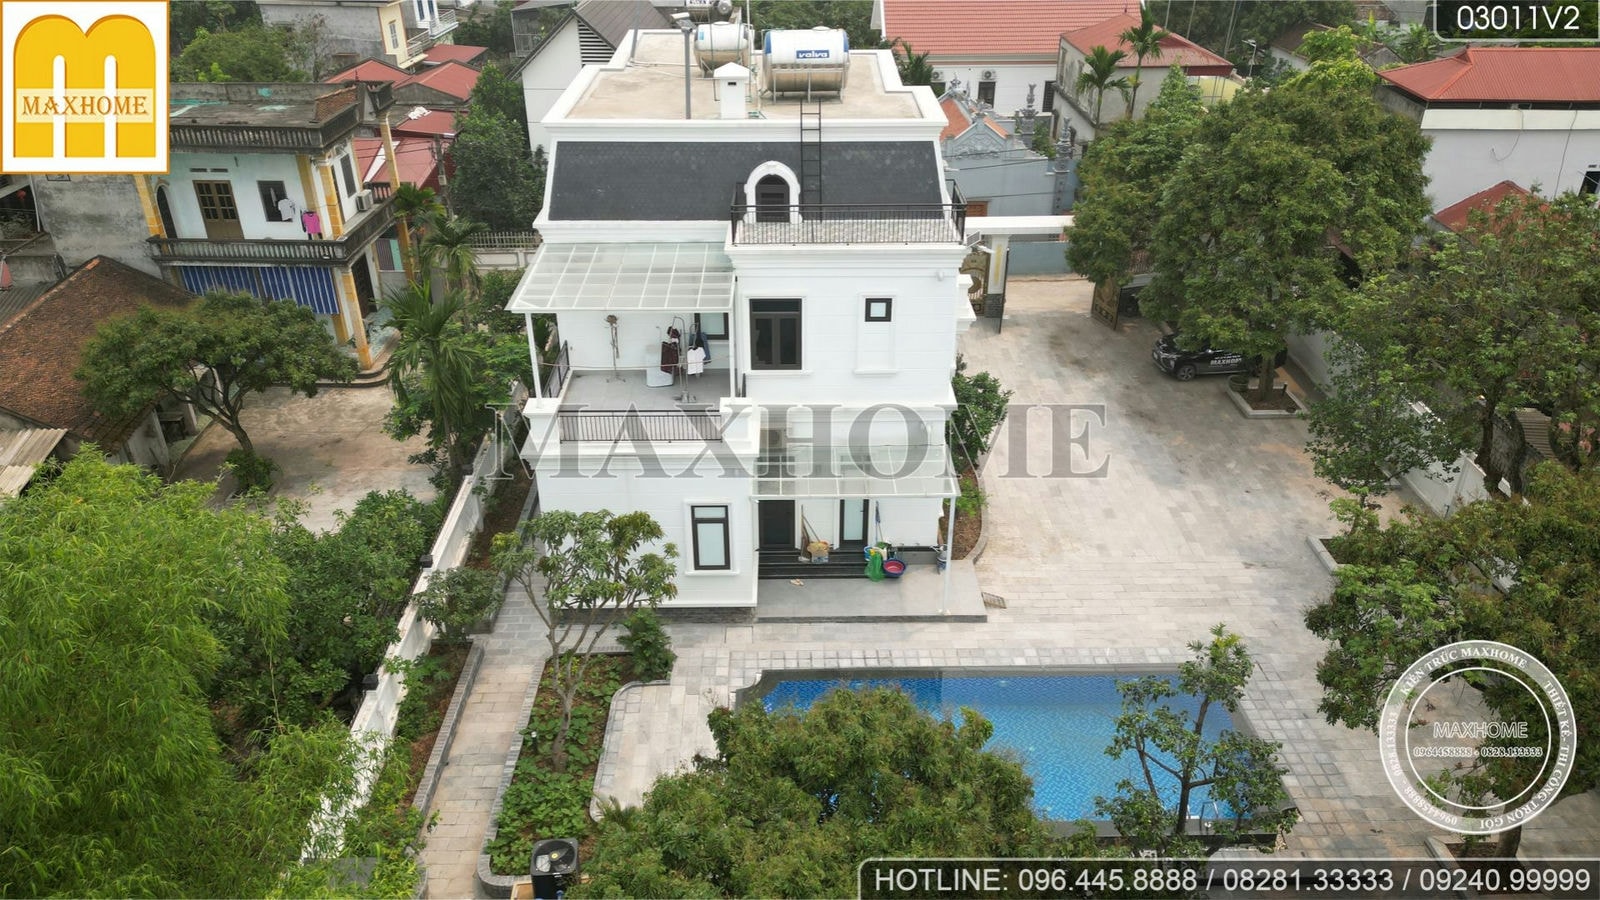 Tham quan thực tế biệt thự 2 tầng mái Mansard đẹp ngất trời tại Hà Nội